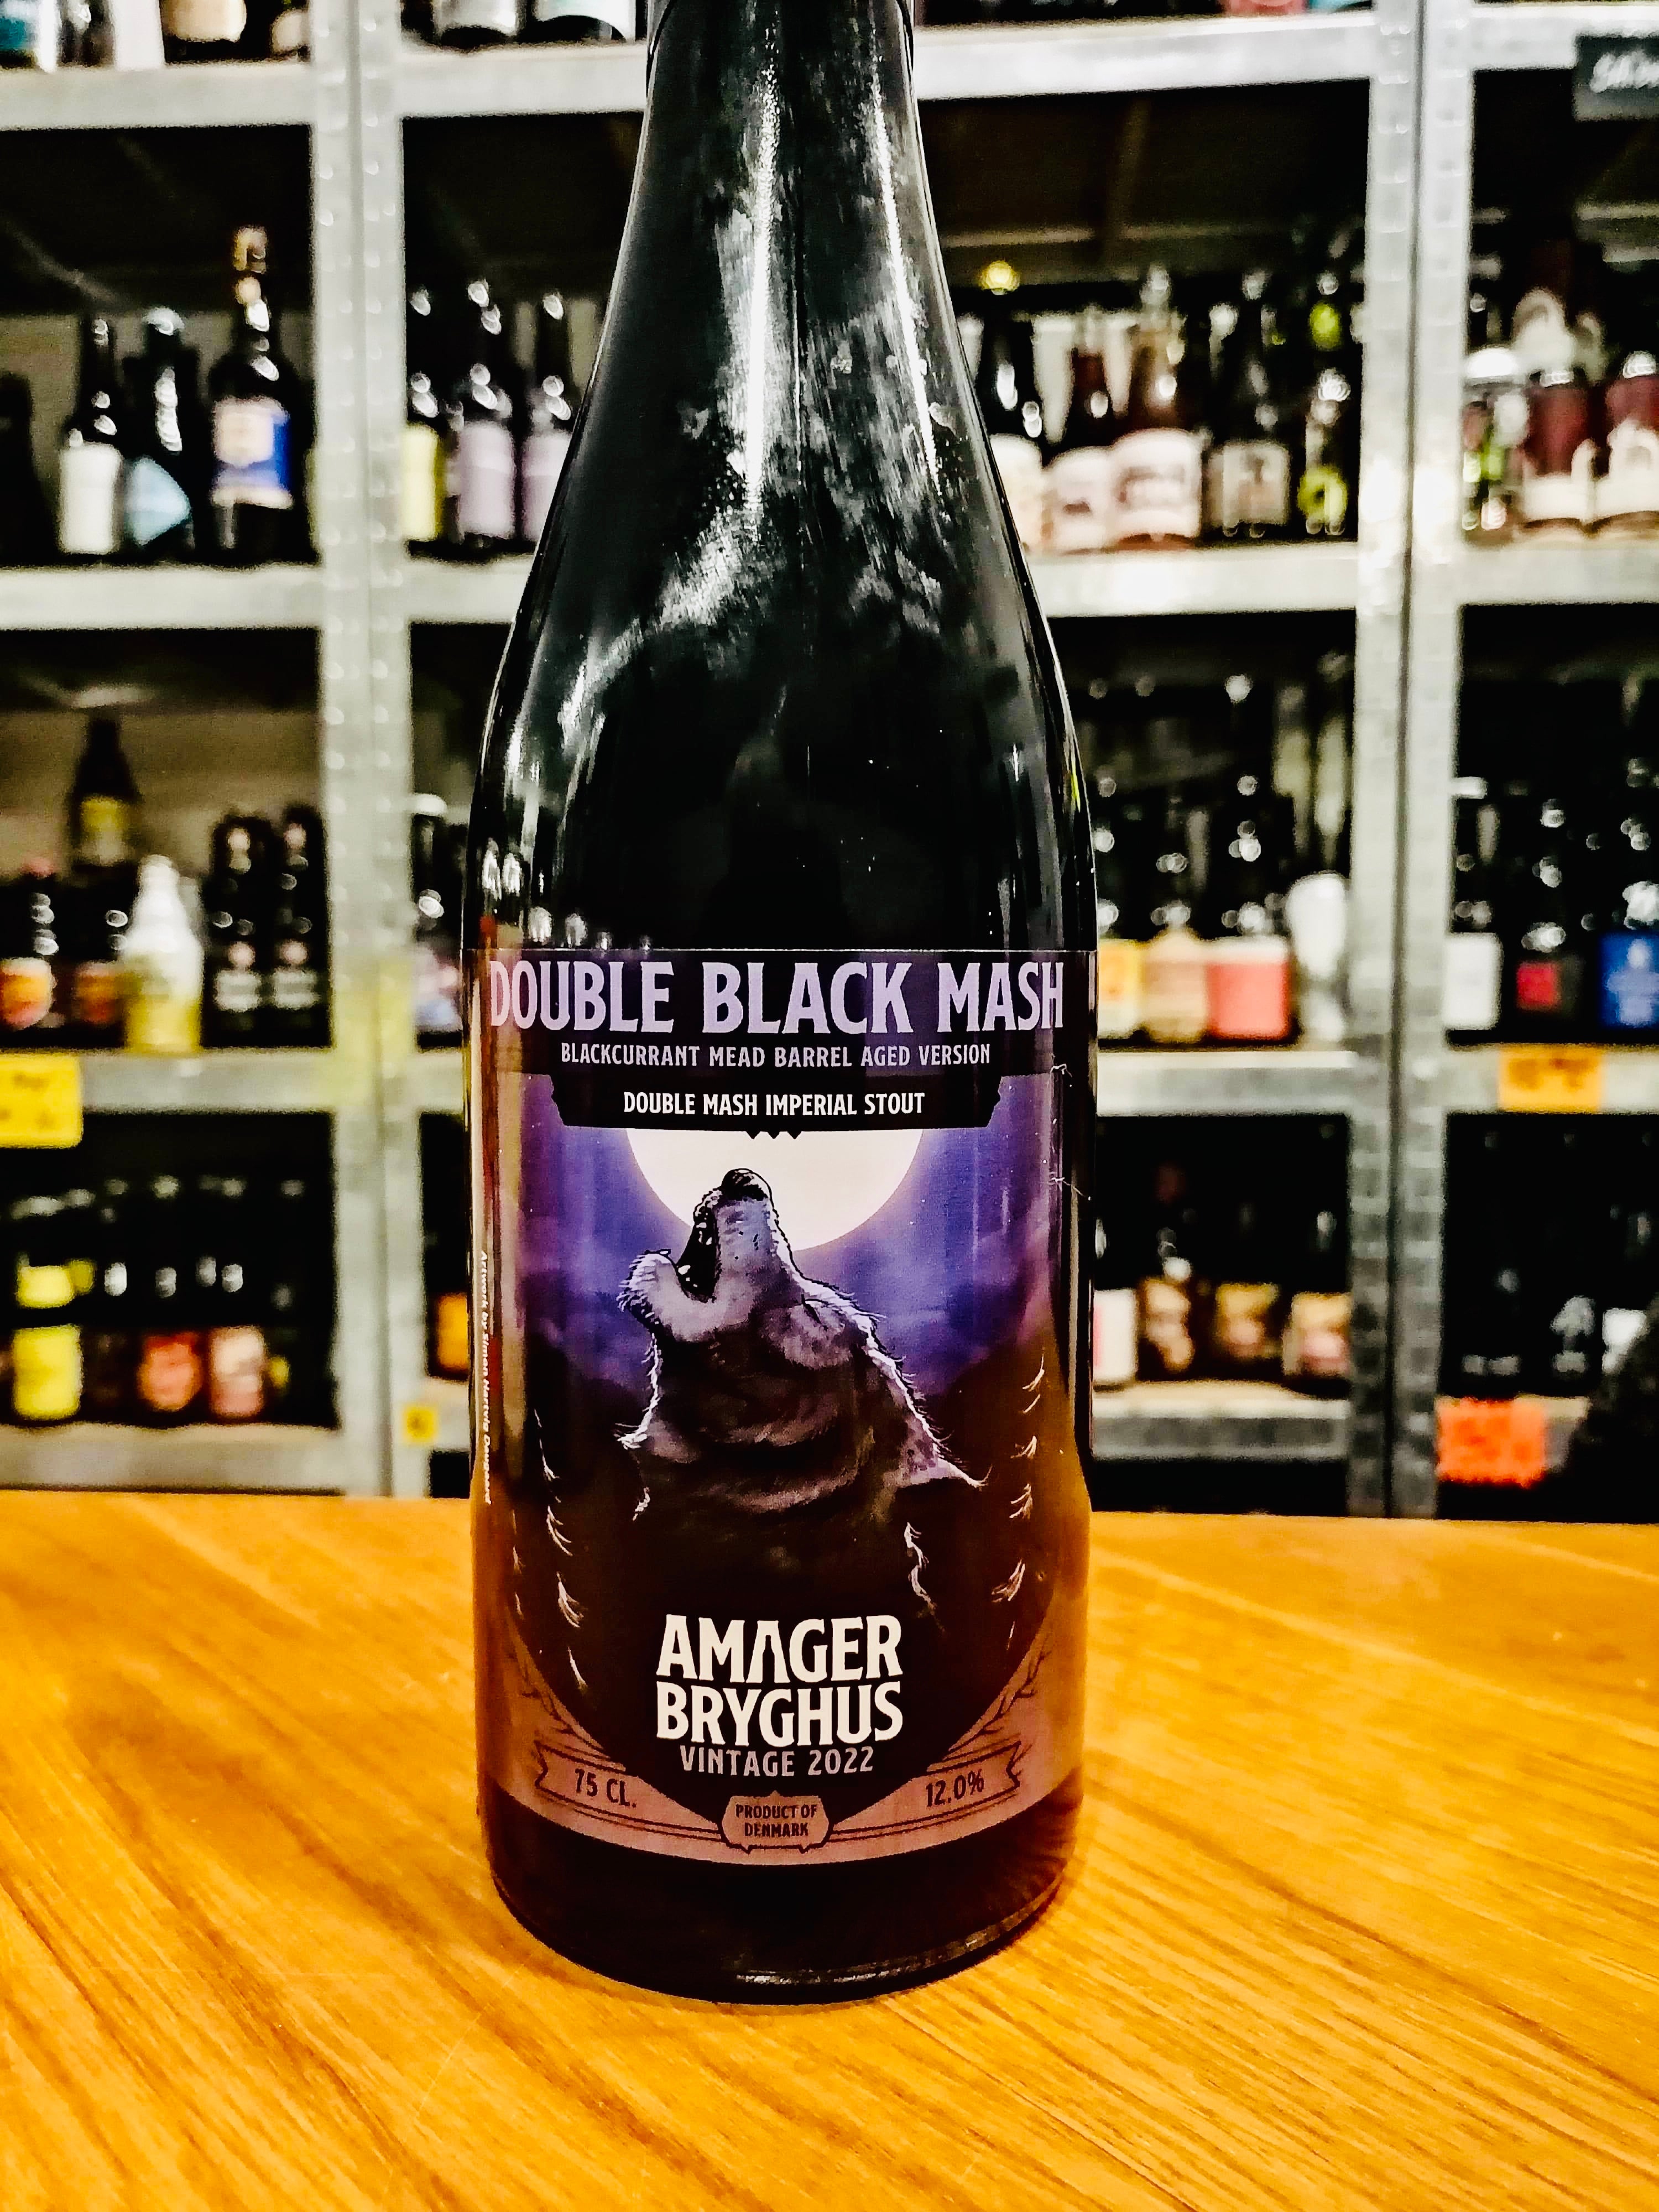 Brug Double black mash vintage 2022 (Blackcurrant mead fadlagret) - Amager bryghus til en forbedret oplevelse